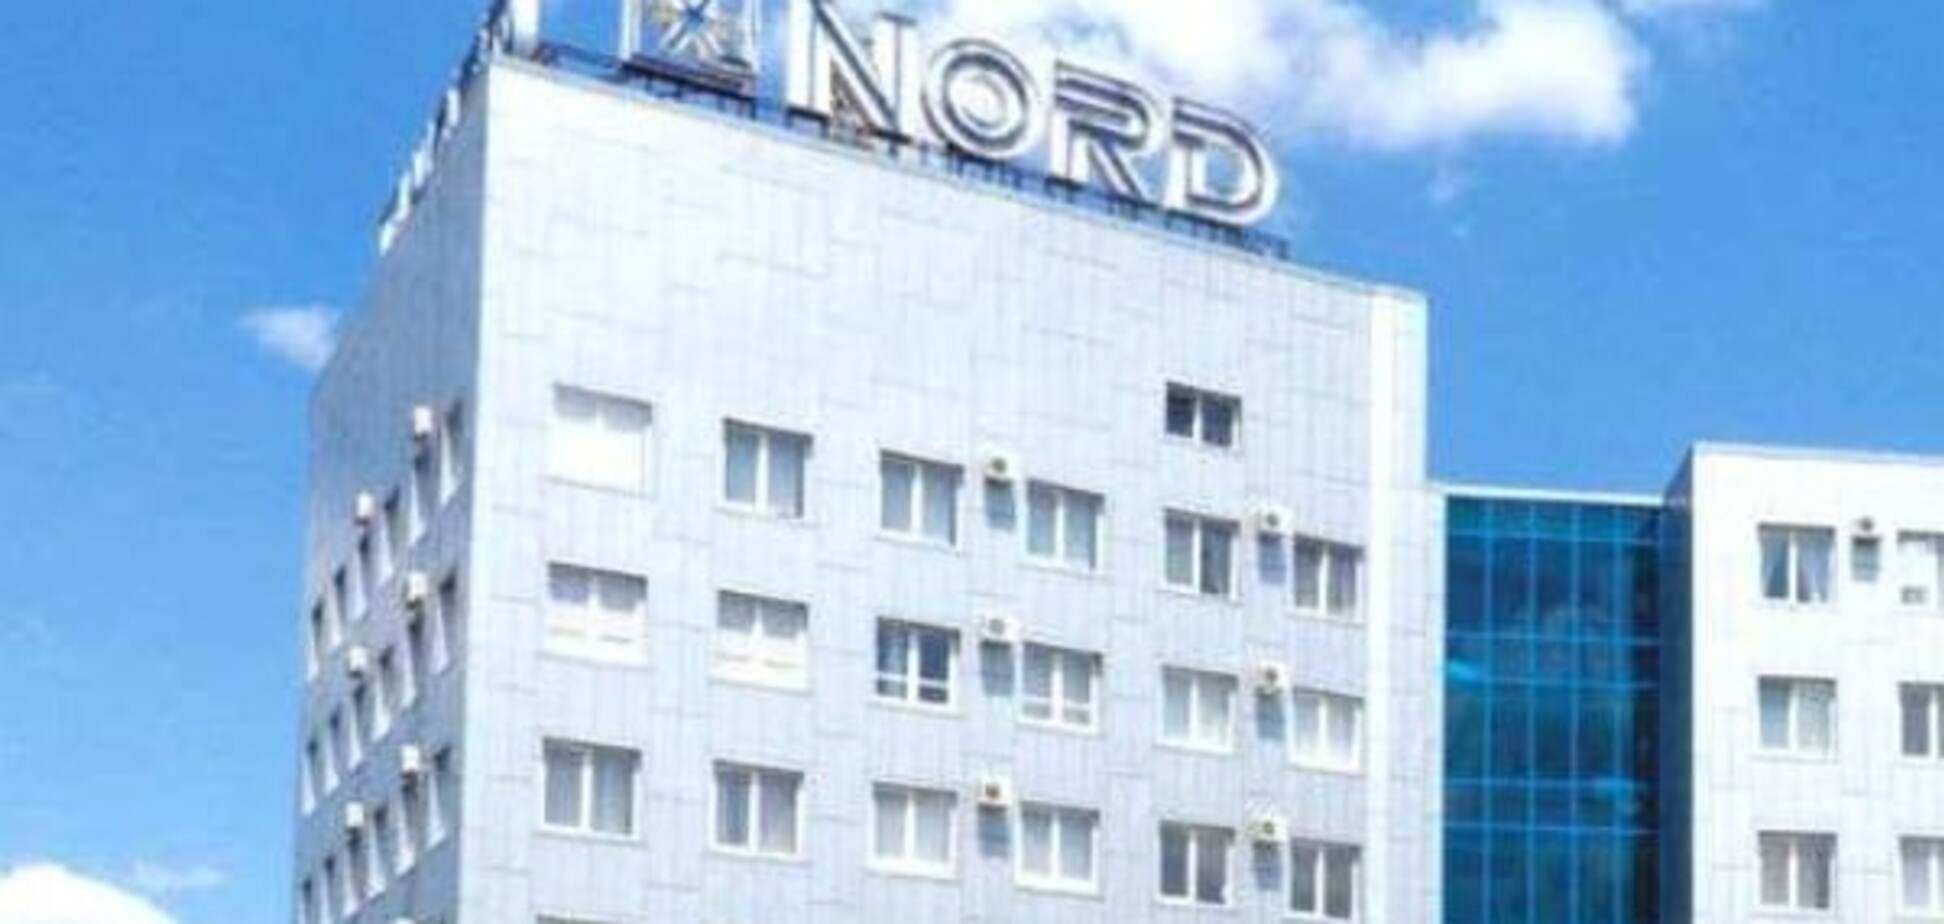 Ландык продал завод 'Норд' россиянам